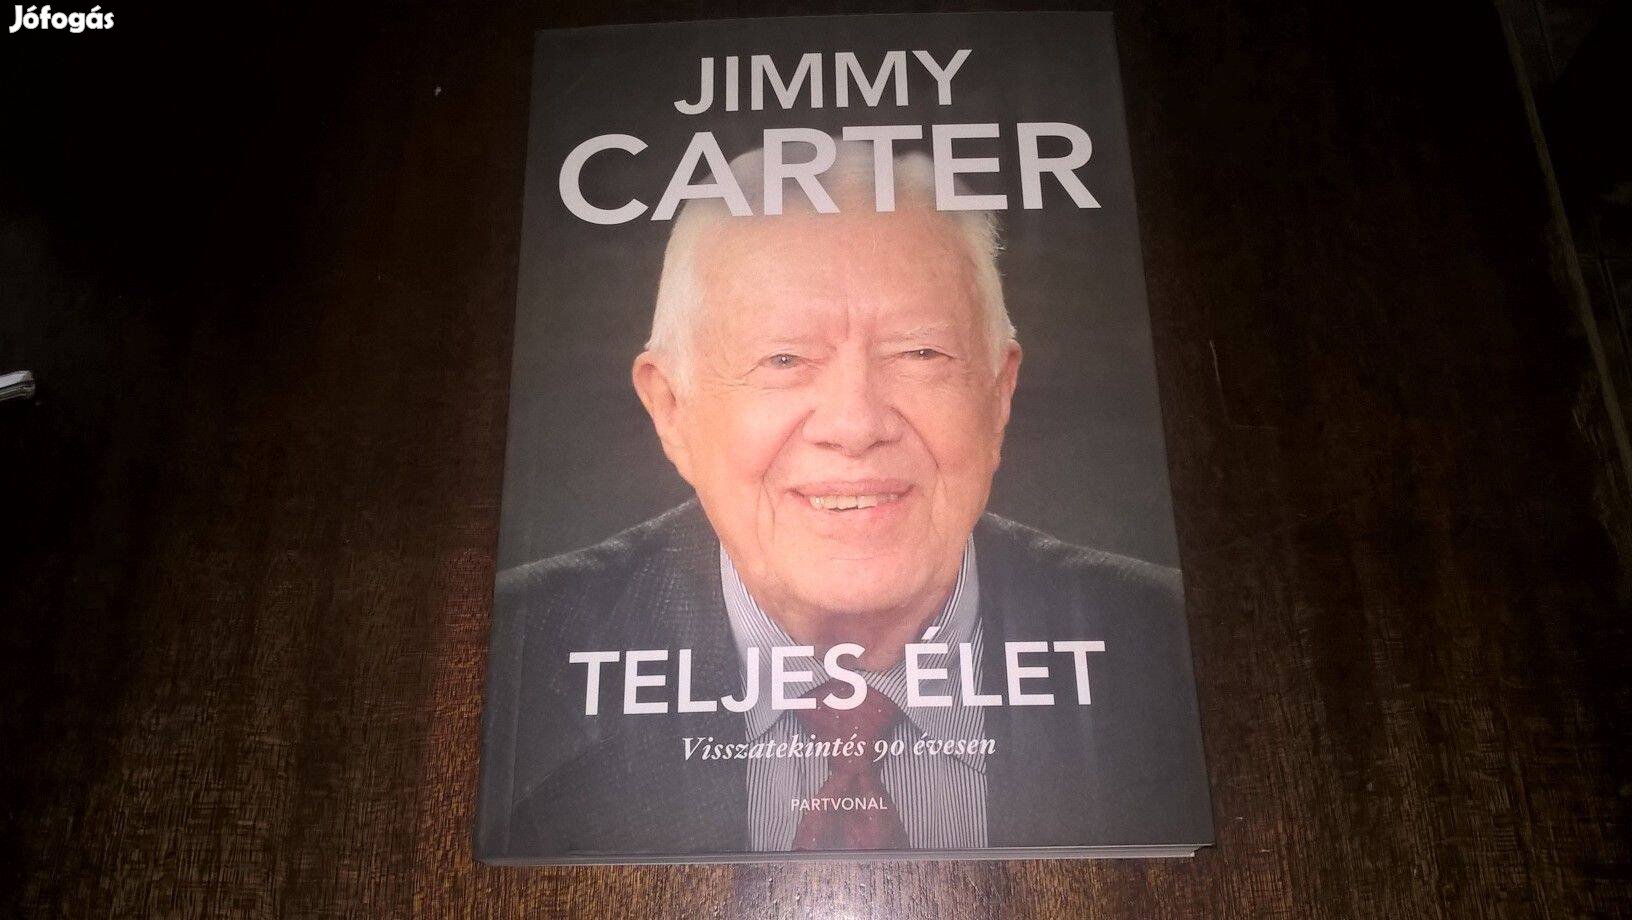 Jimmy Carter - Teljes élet